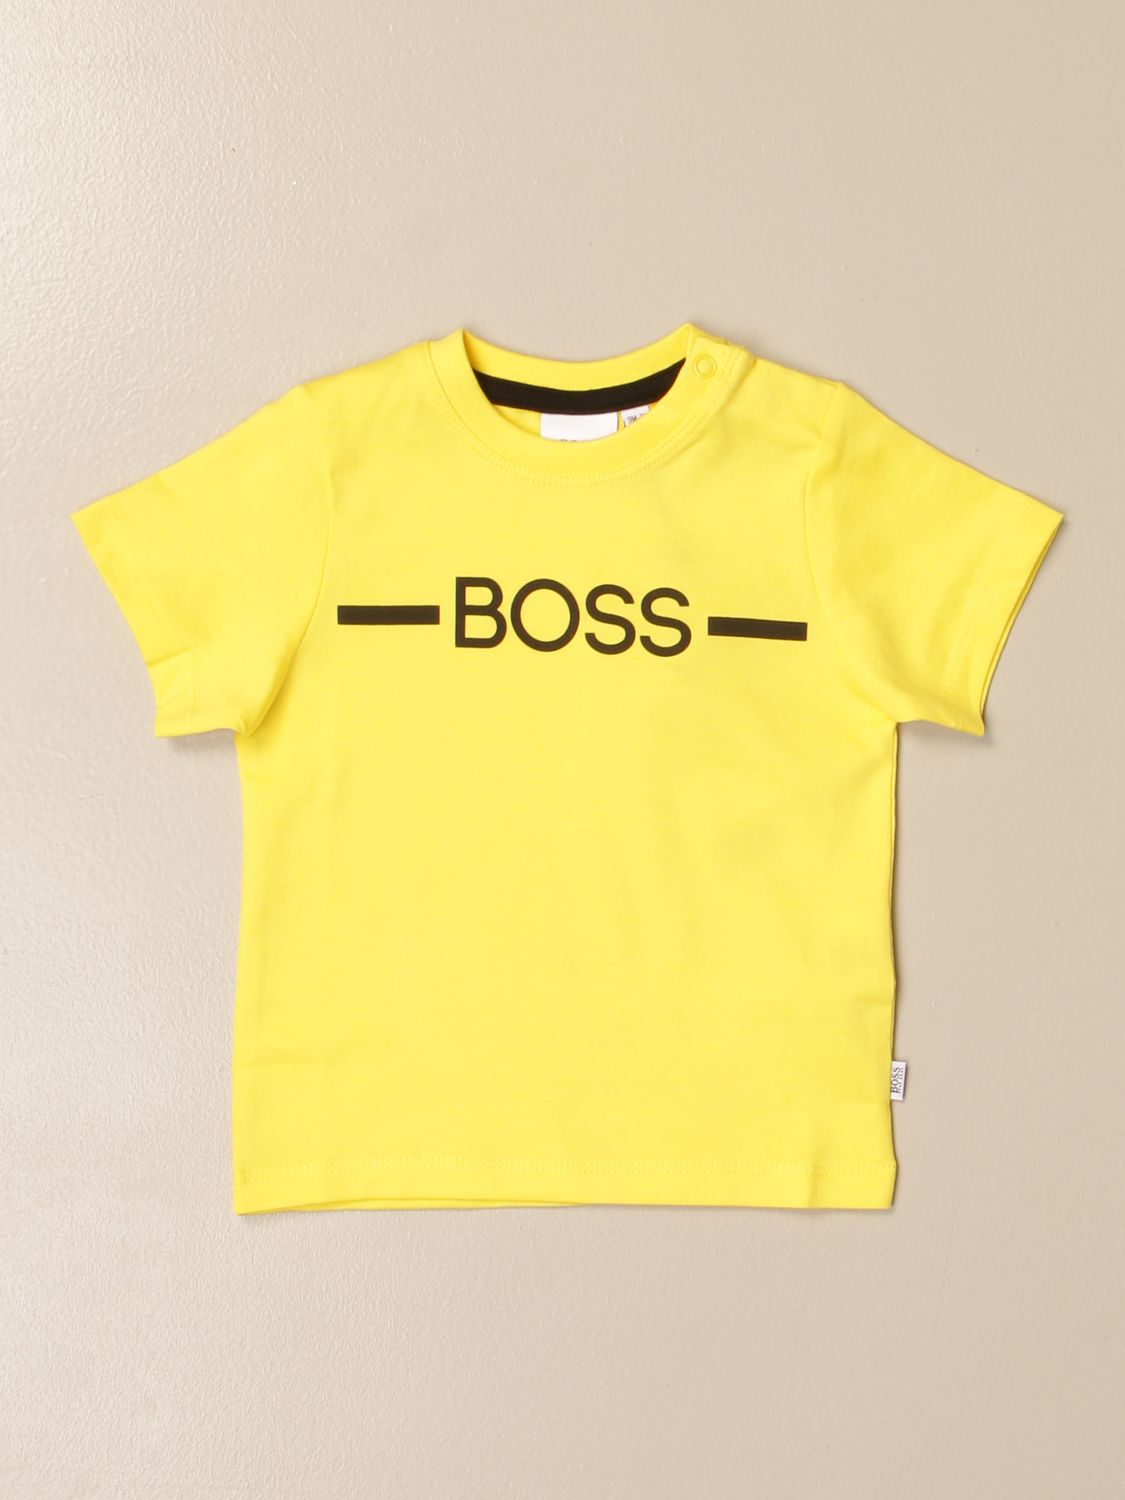 hugo boss yellow shirt